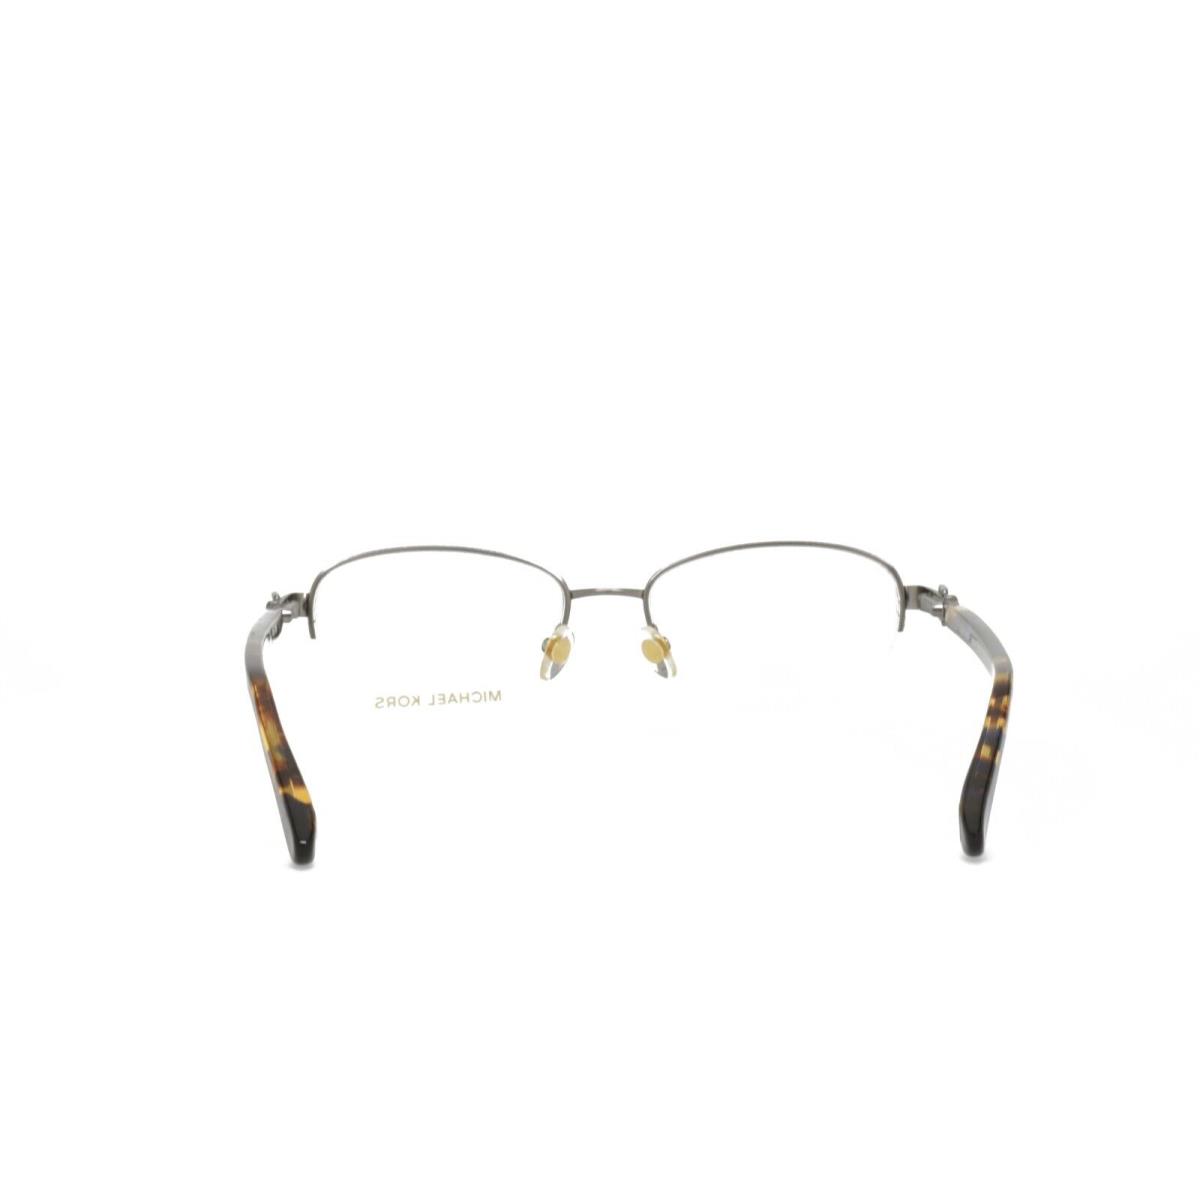 Michael Kors eyeglasses  - Frame: Gray 2